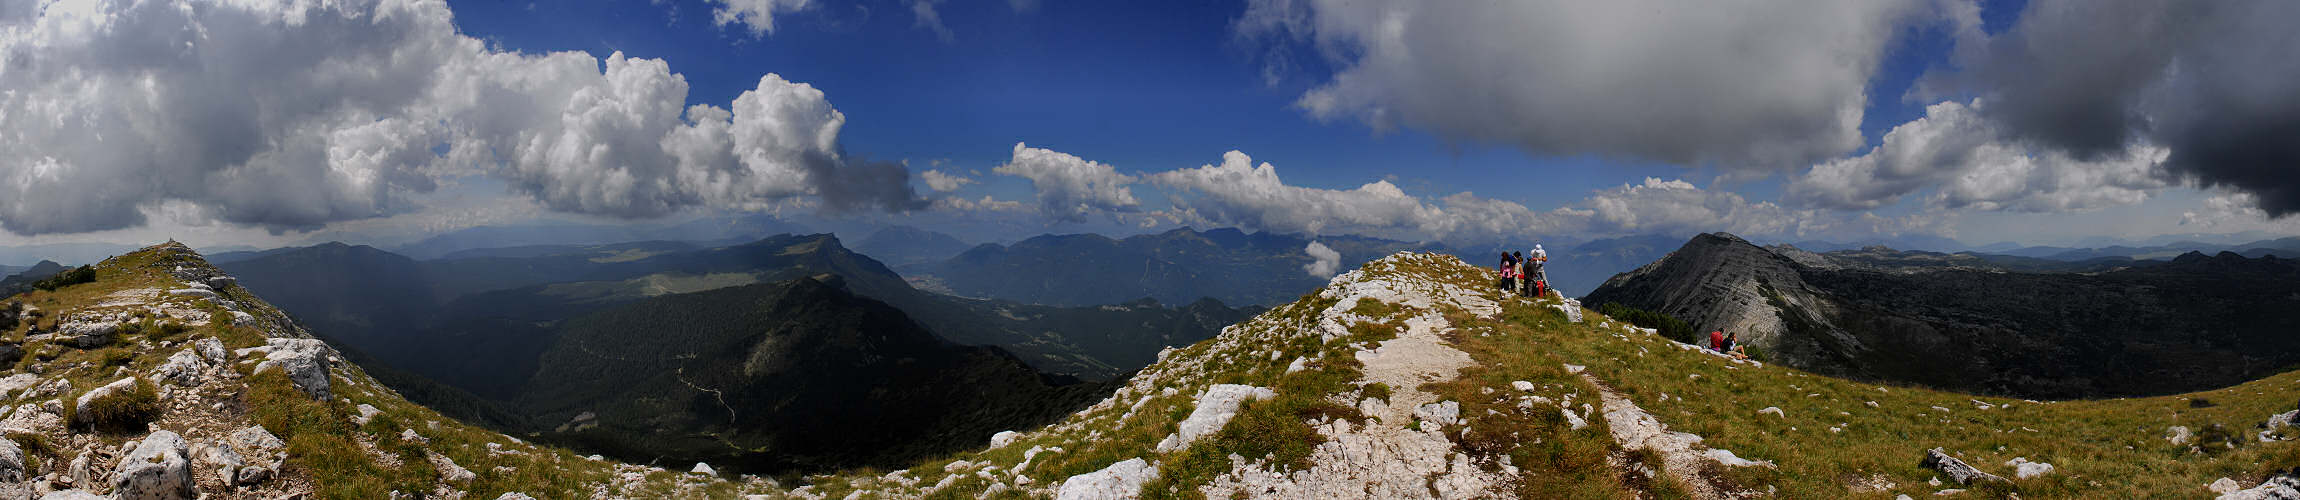 altopiano Larici e salita a cima Portule - fotografia panoramica